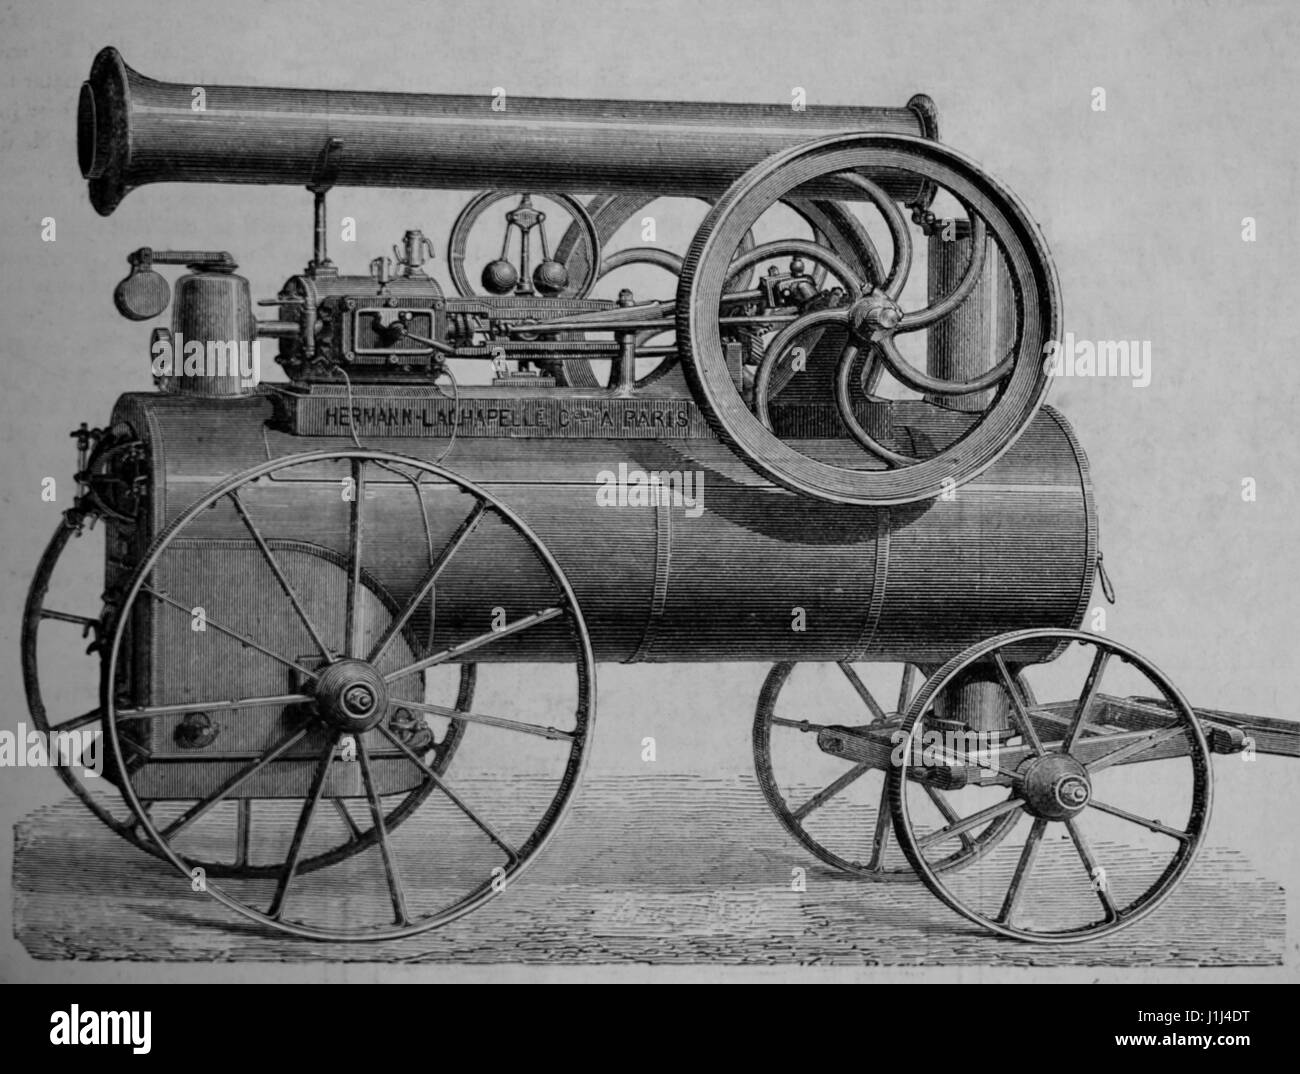 Orizzontale del motore a vapore su ruote, costruito da Hermann-Lachapelle. Incisione, 1875. La spagnolo e illustrazione americana. Edizione spagnola. Foto Stock